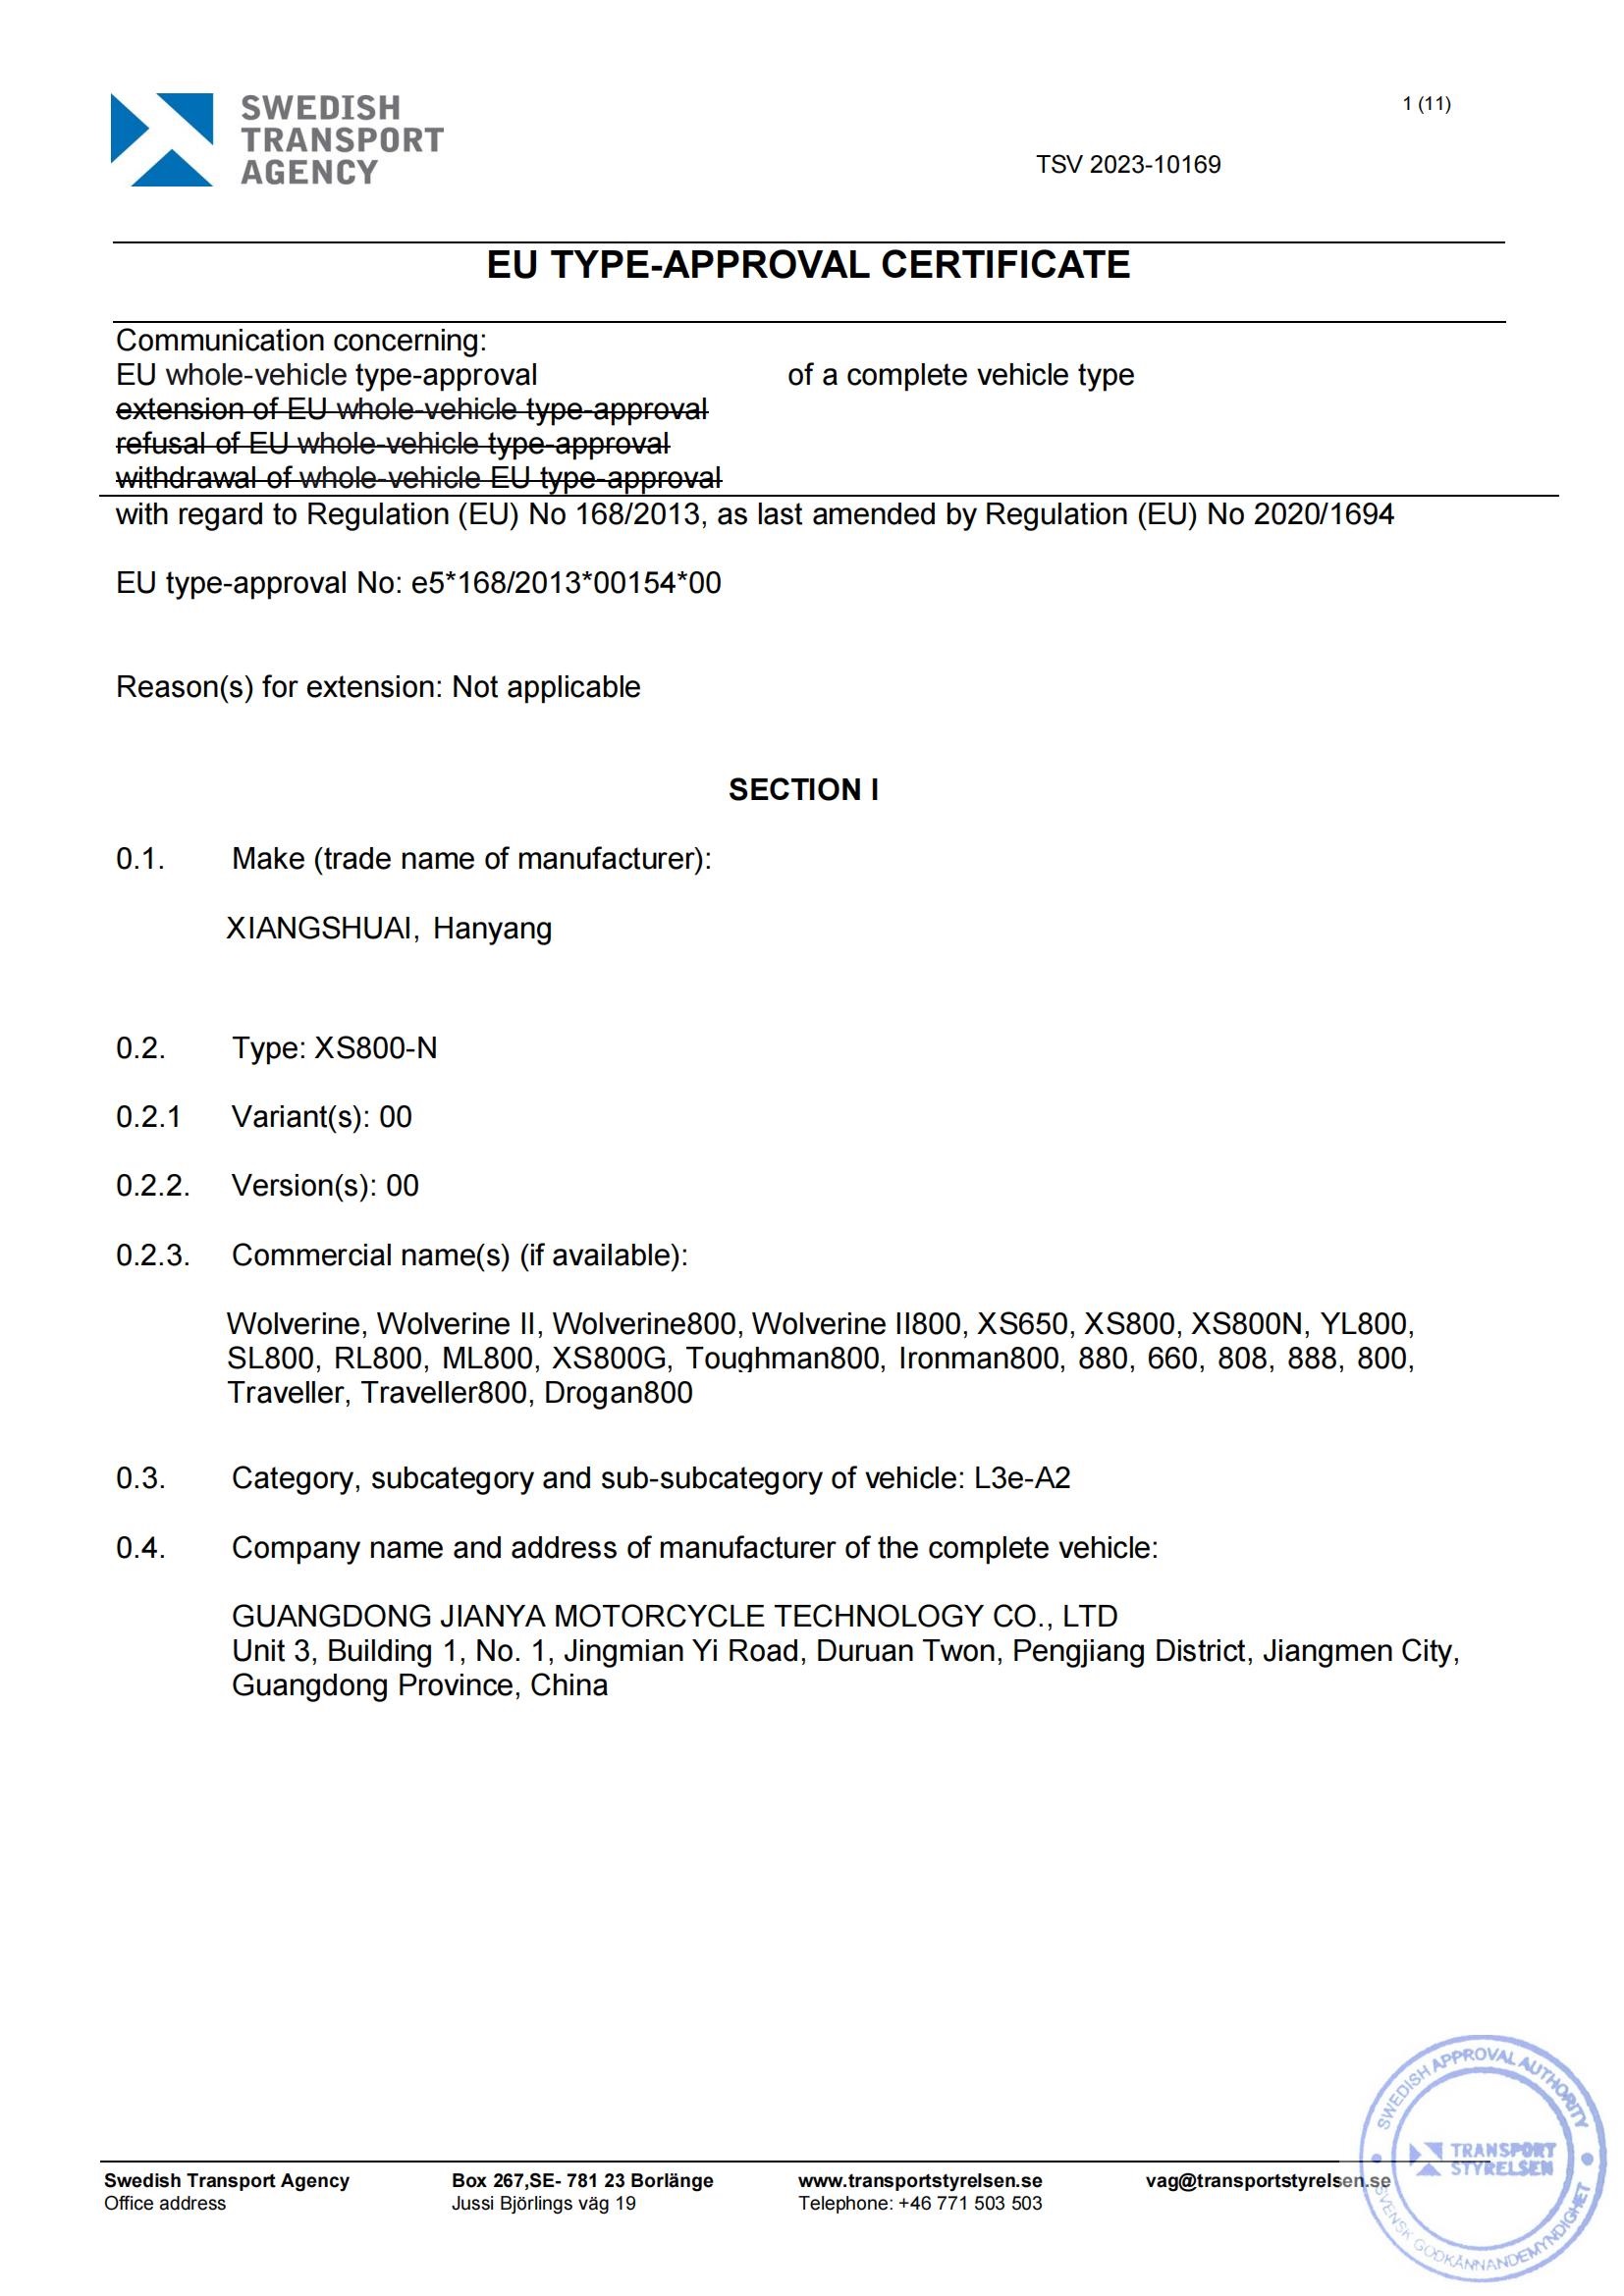 EU5 Certificate (2)